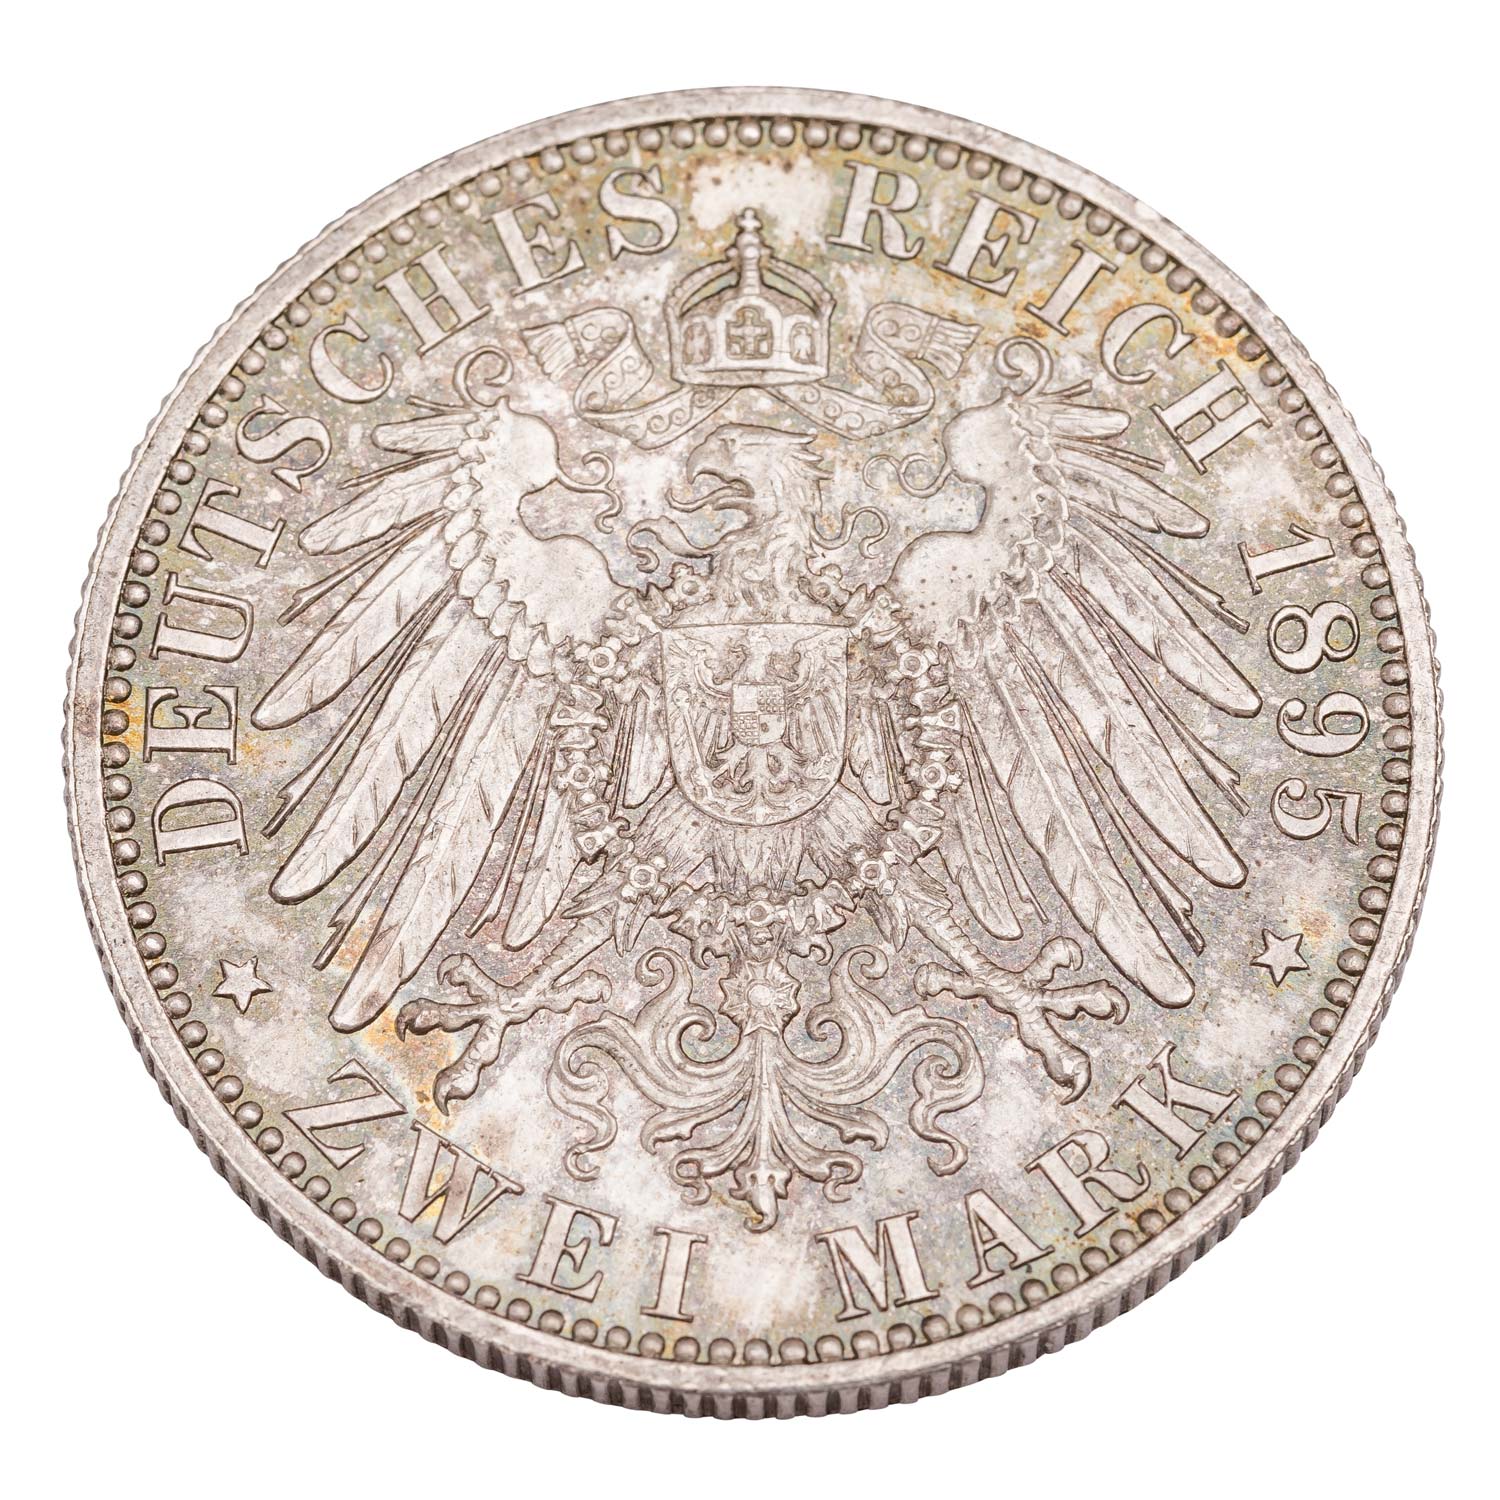 Herzogtum Sachsen-Coburg und Gotha/Silber - 2 Mark 1895/A, Alfred, - Image 2 of 2